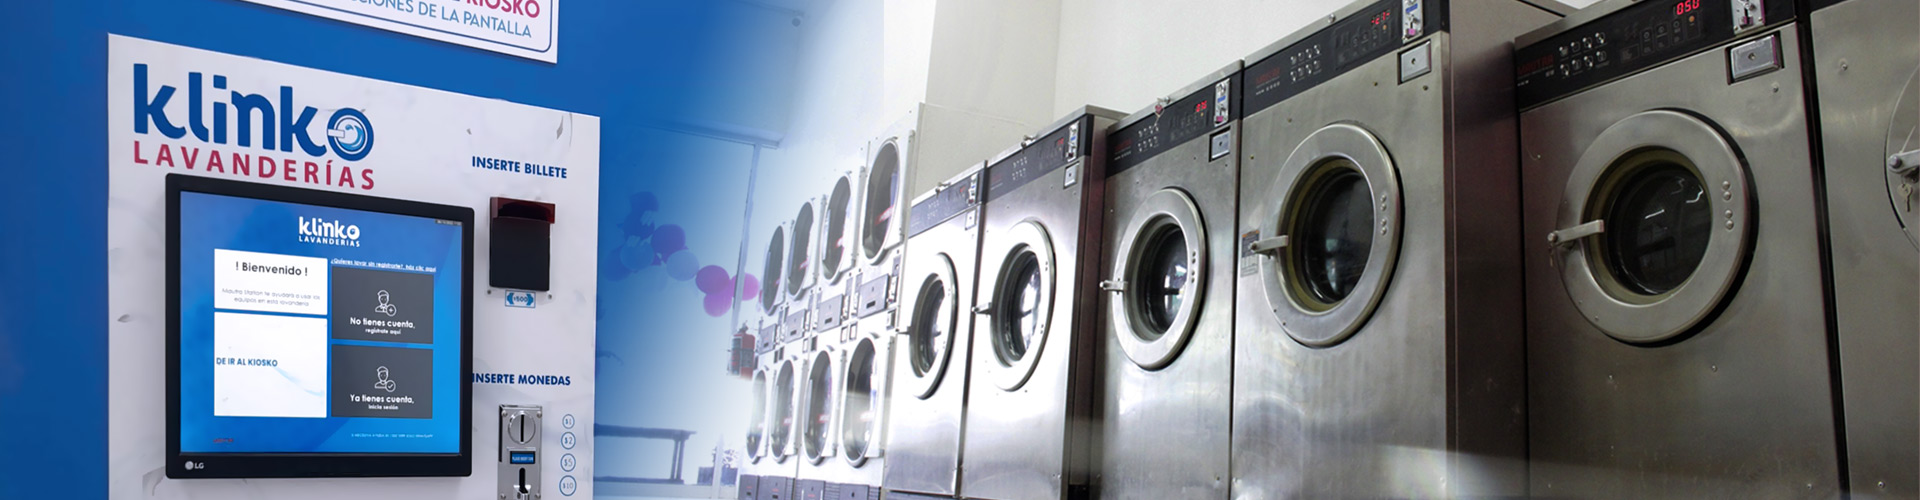 El mayor auge de las lavanderías es en temporada de invierno ¿Por qué?